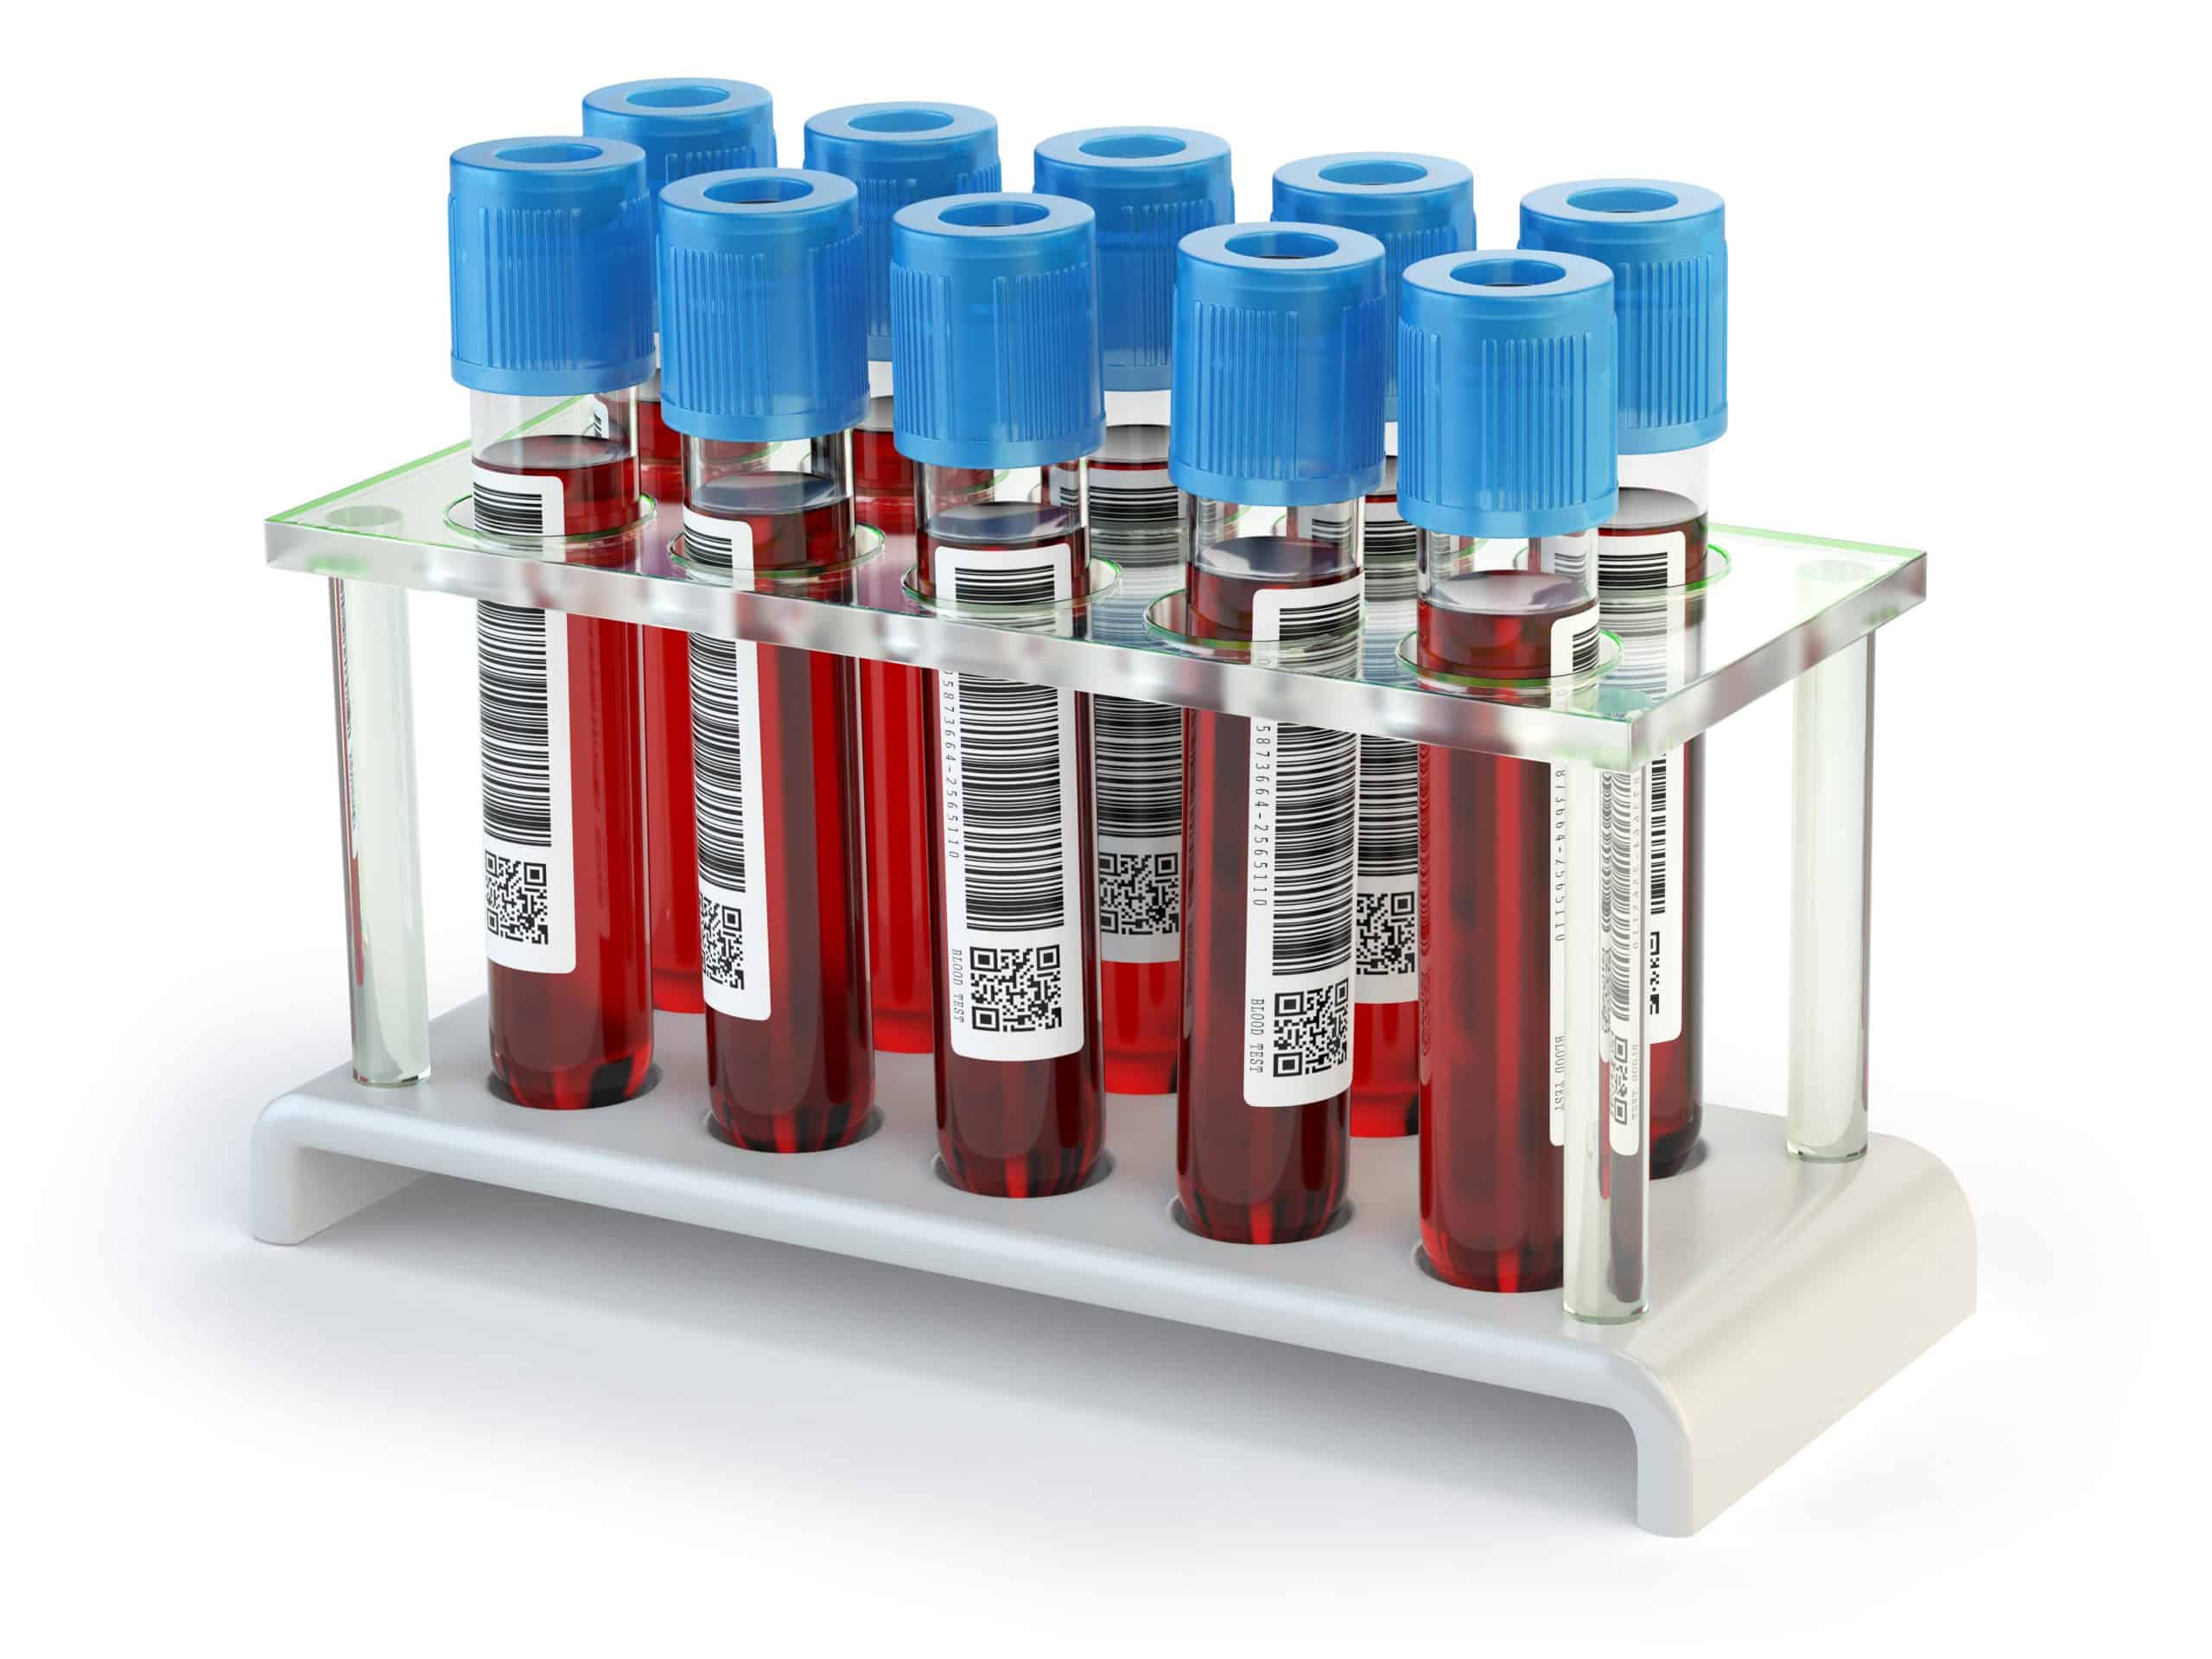 Blood test samples tubes